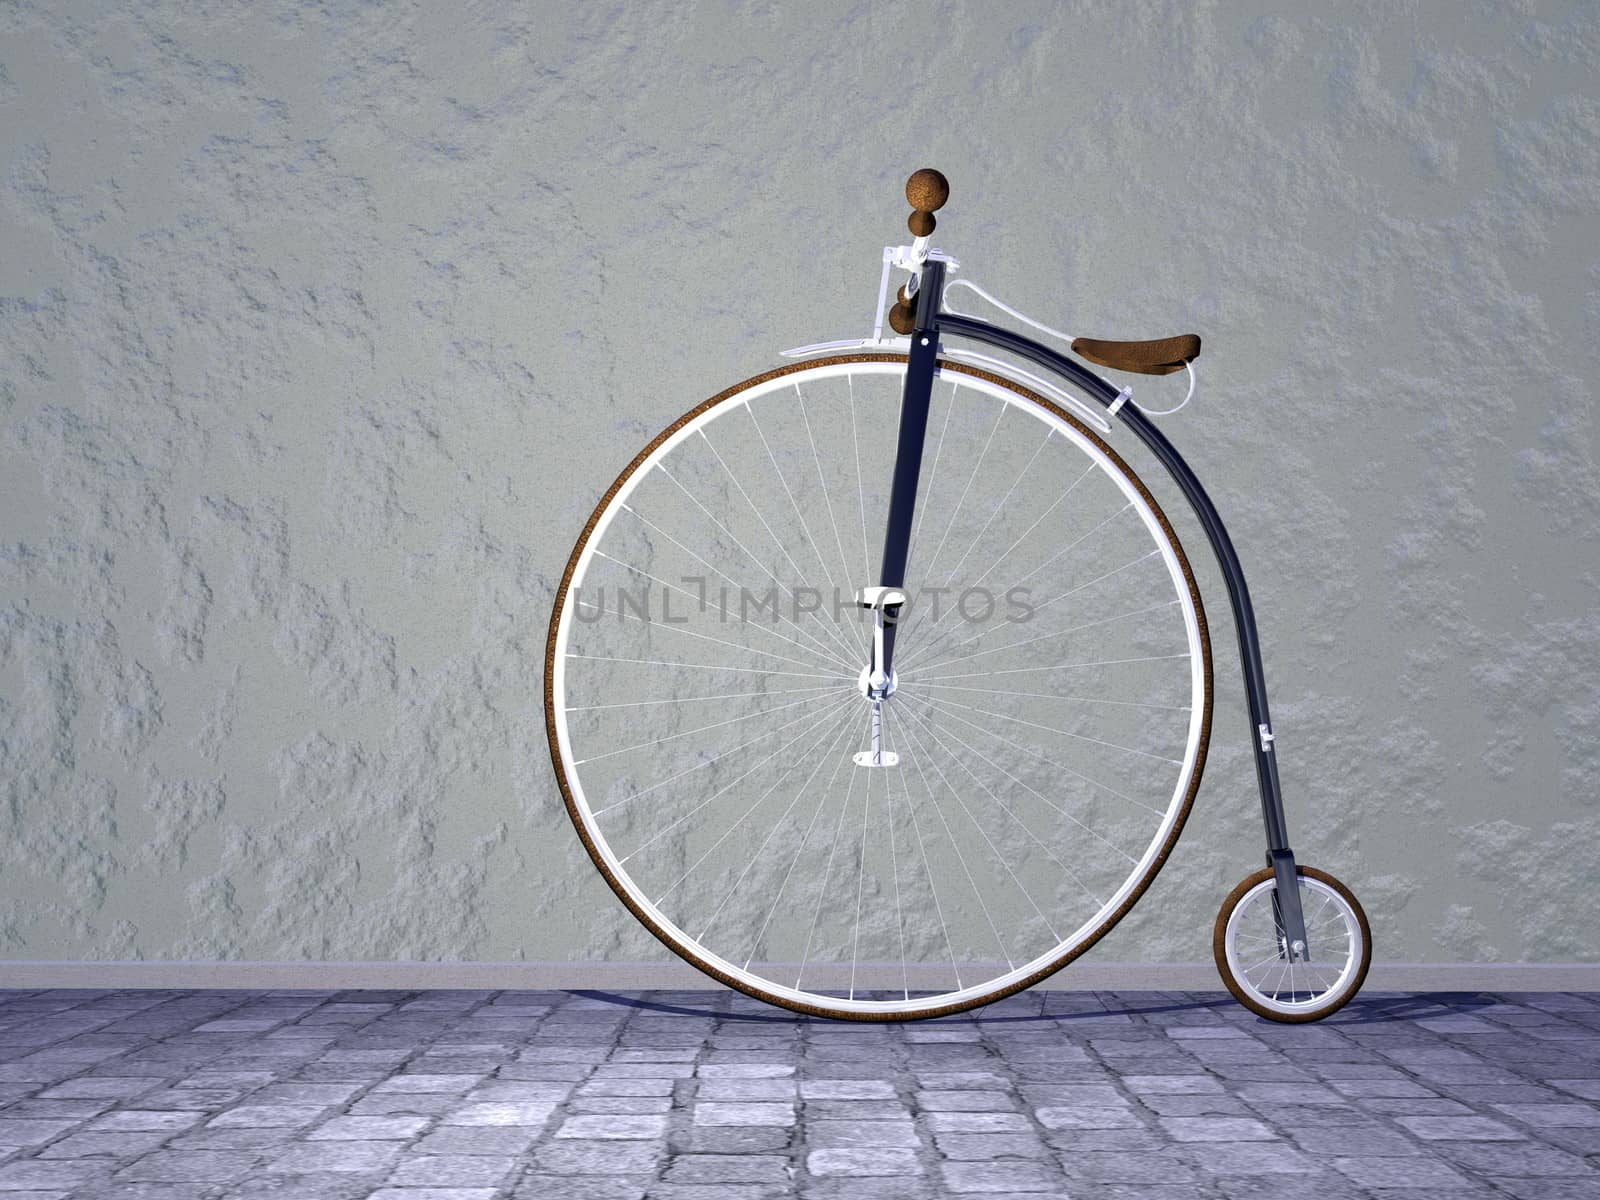 Vintage bicycle - 3D render by Elenaphotos21